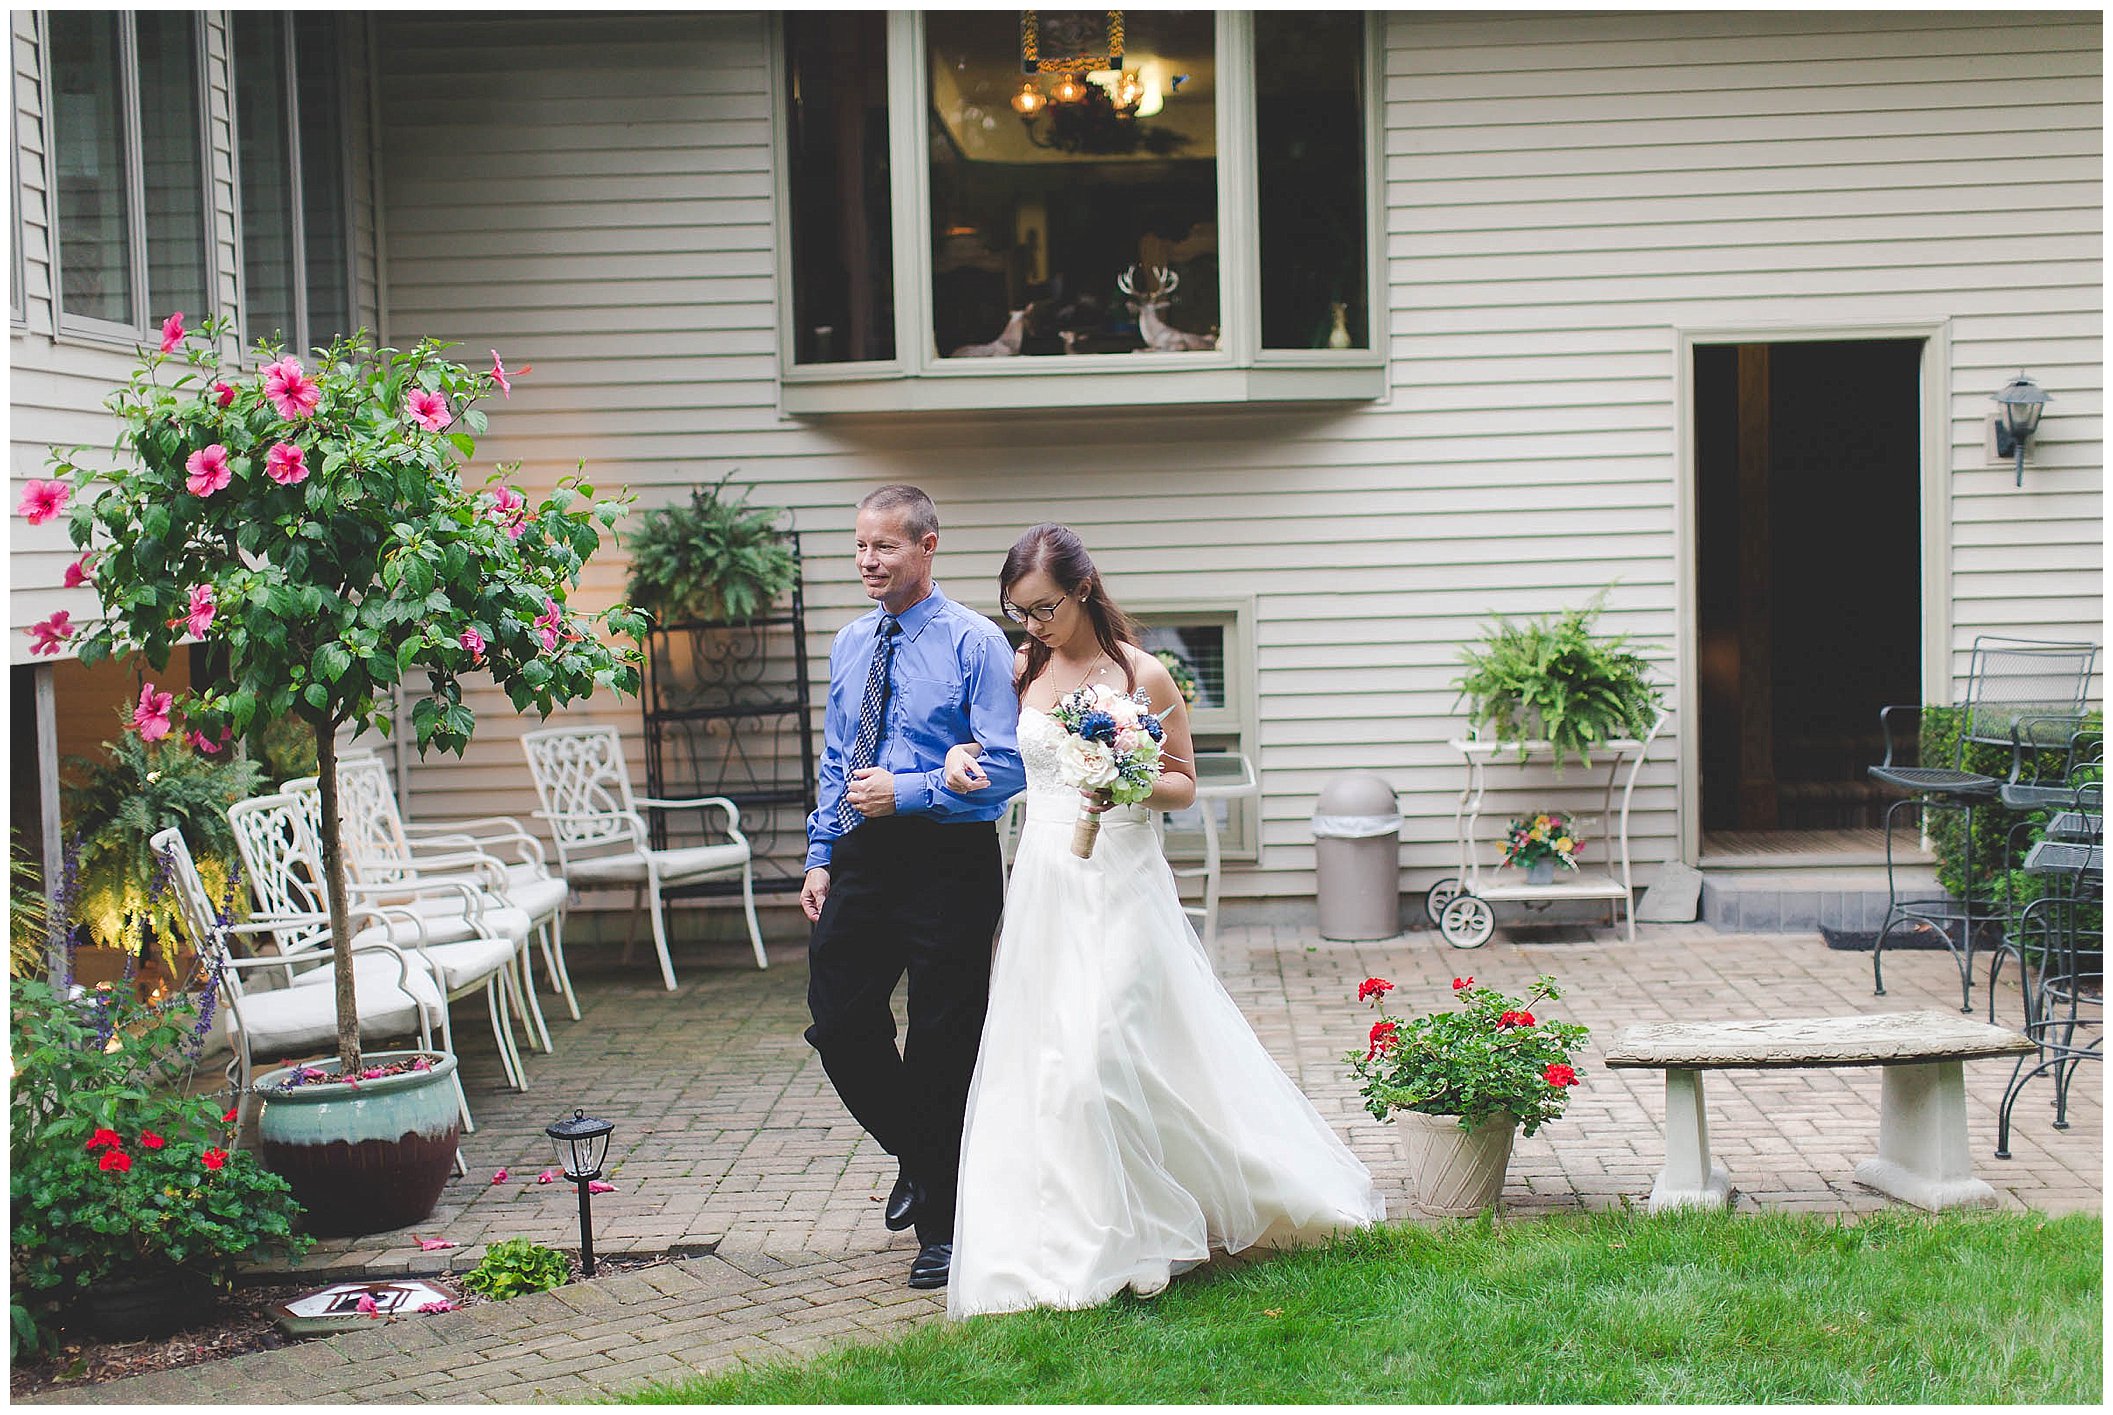 Stunning backyard wedding with twinkly lights, Fort Wayne Indiana Wedding Photographer_0009.jpg